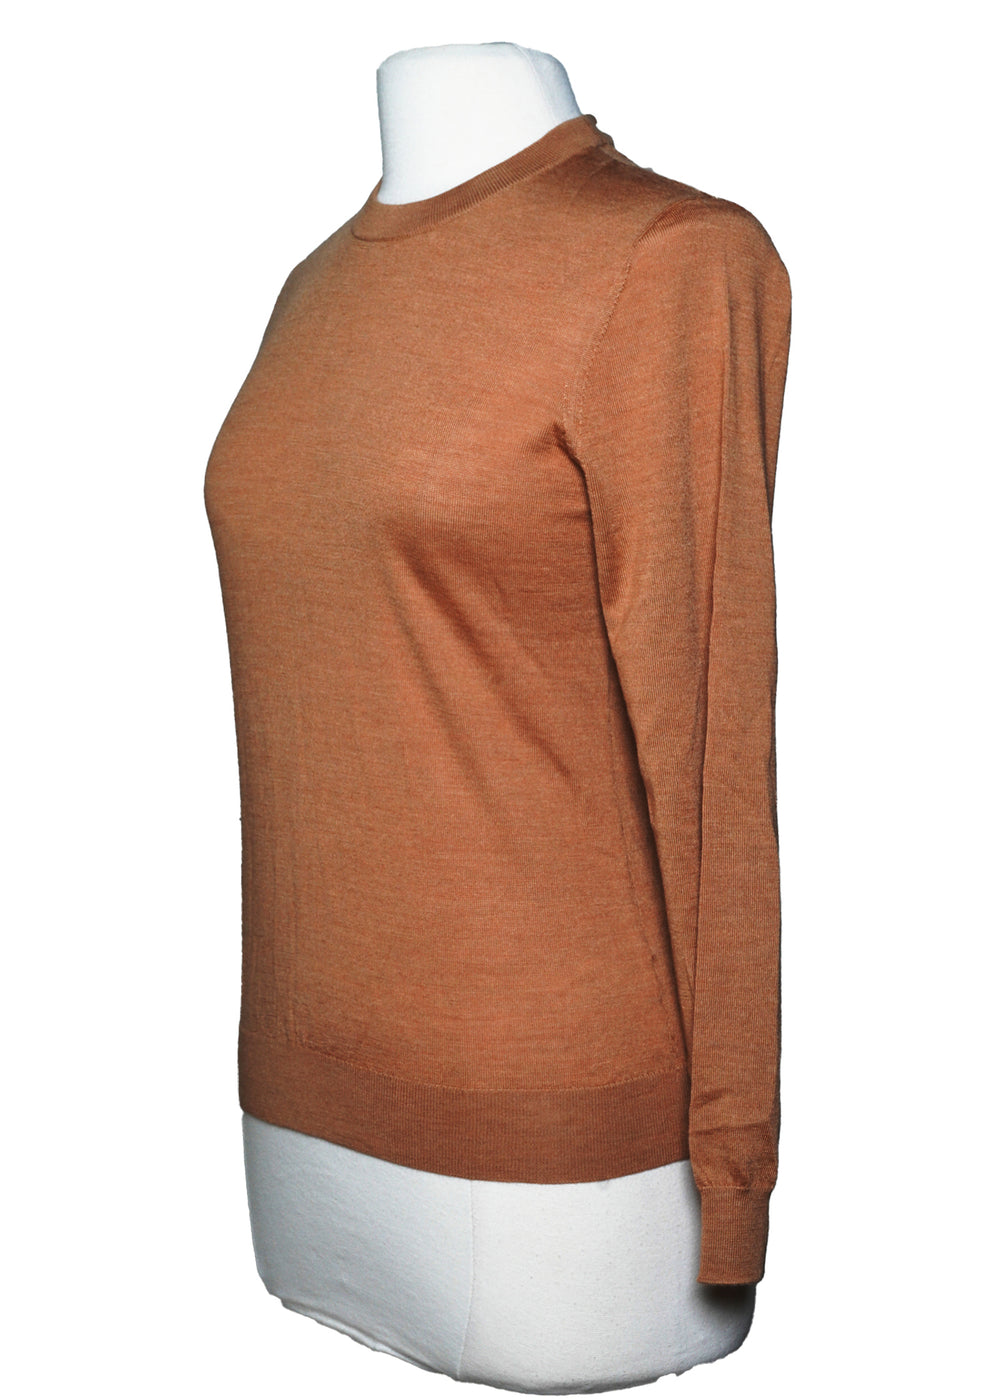 Peter Millar Sweater -  Gold  Brown  - Size Medium - Skorzie